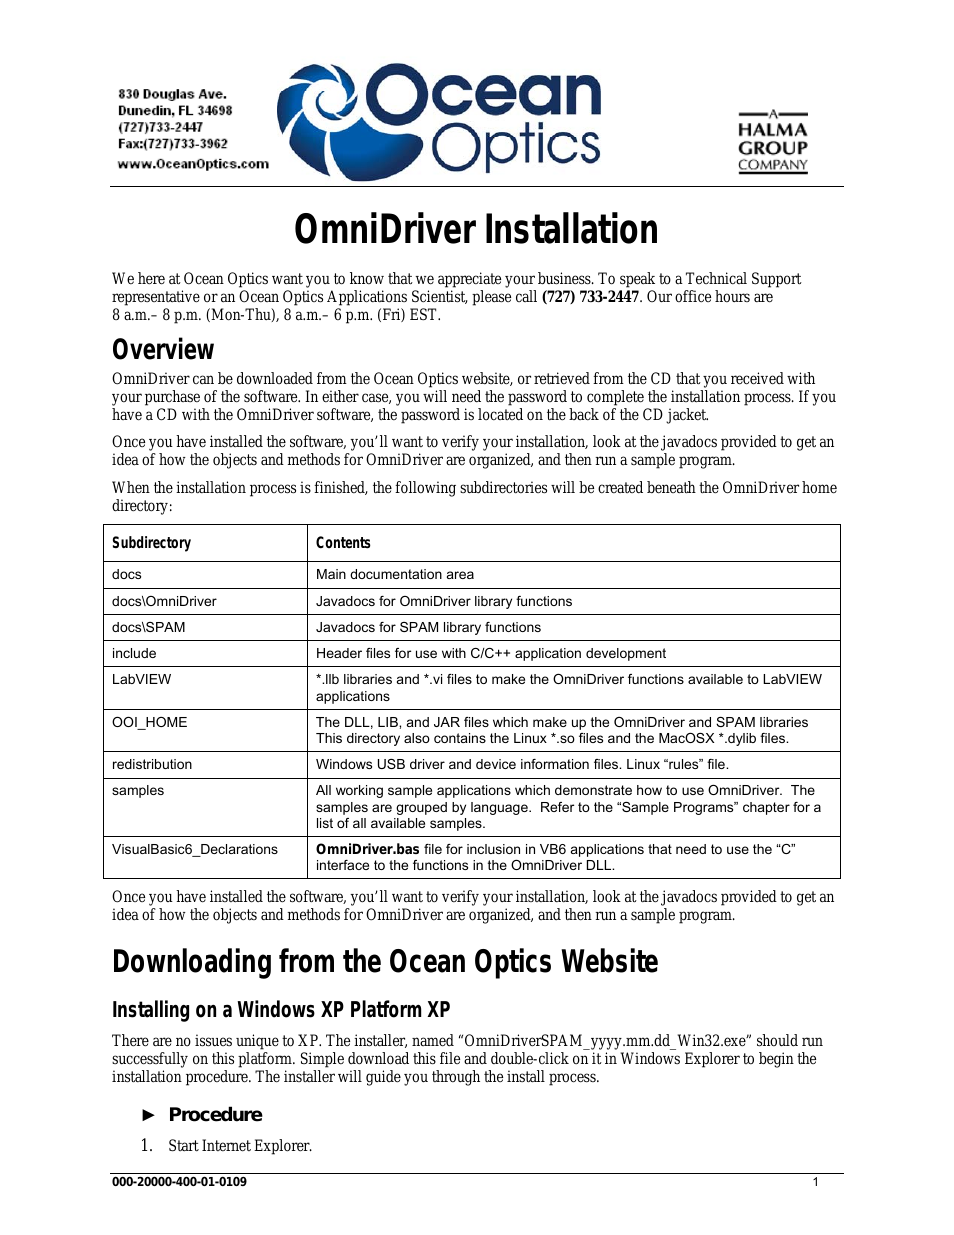 OmniDriver Install